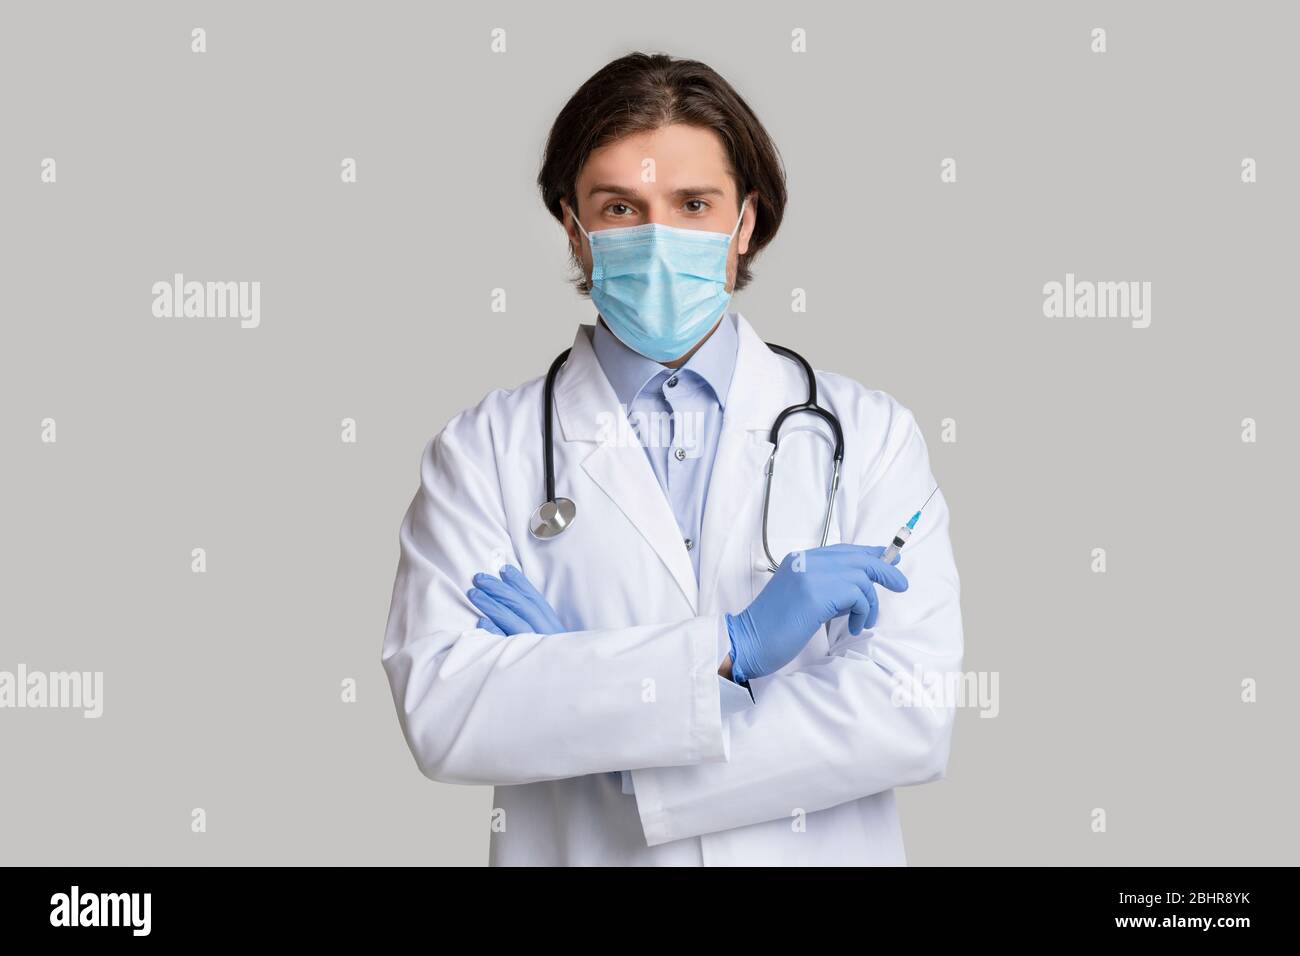 Medico di sesso maschile sicuro nella maschera medica protettiva che tiene la siringa con il vaccino Foto Stock